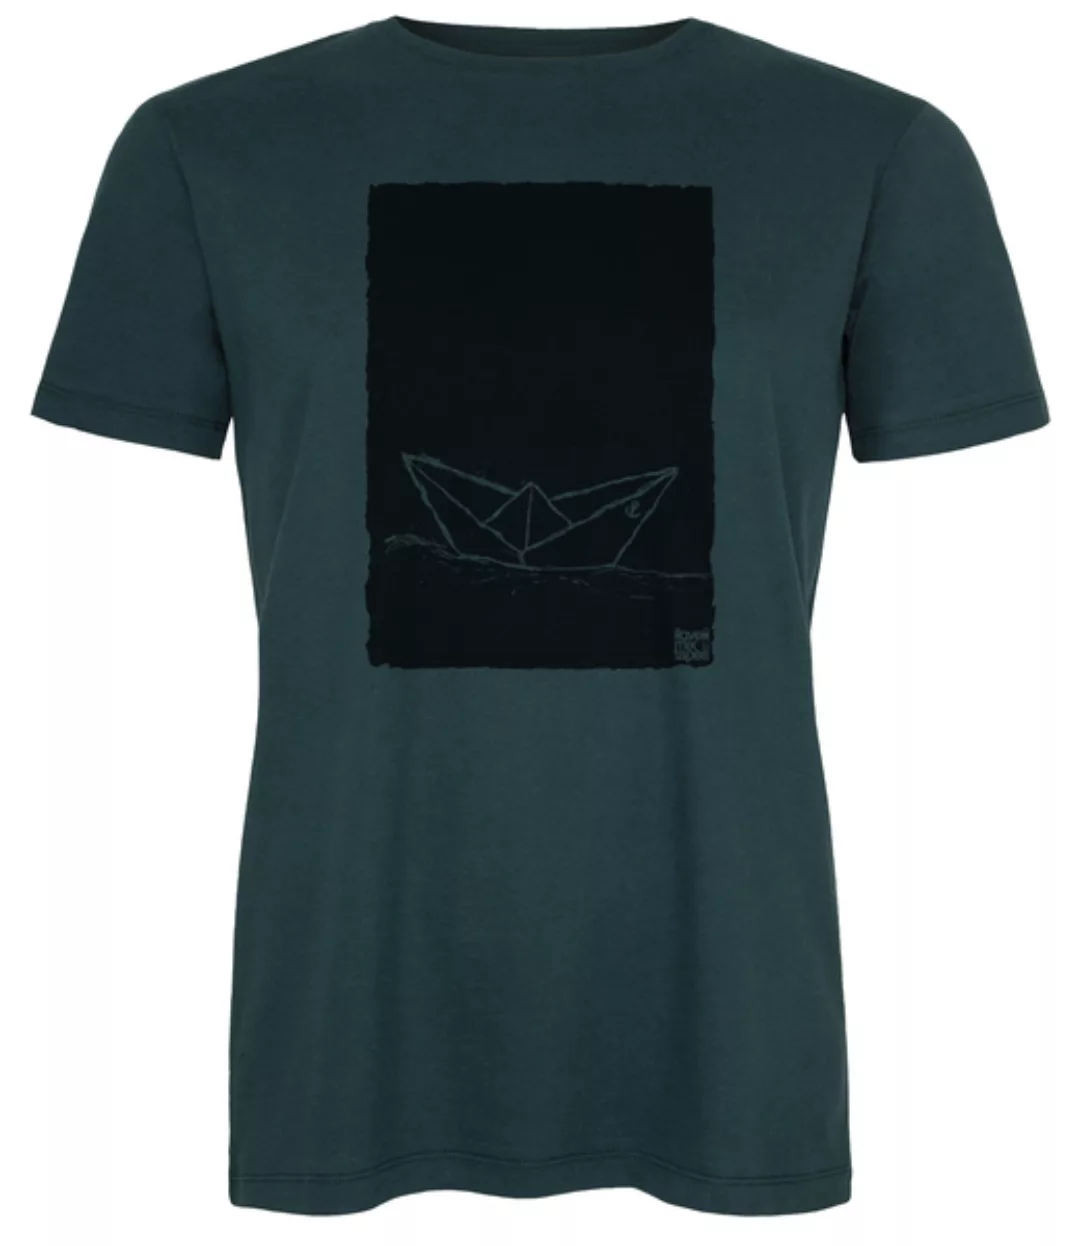 Herren T-shirt Paperboat 2.0 Aus Biobaumwolle Teal Black Ilk01 günstig online kaufen